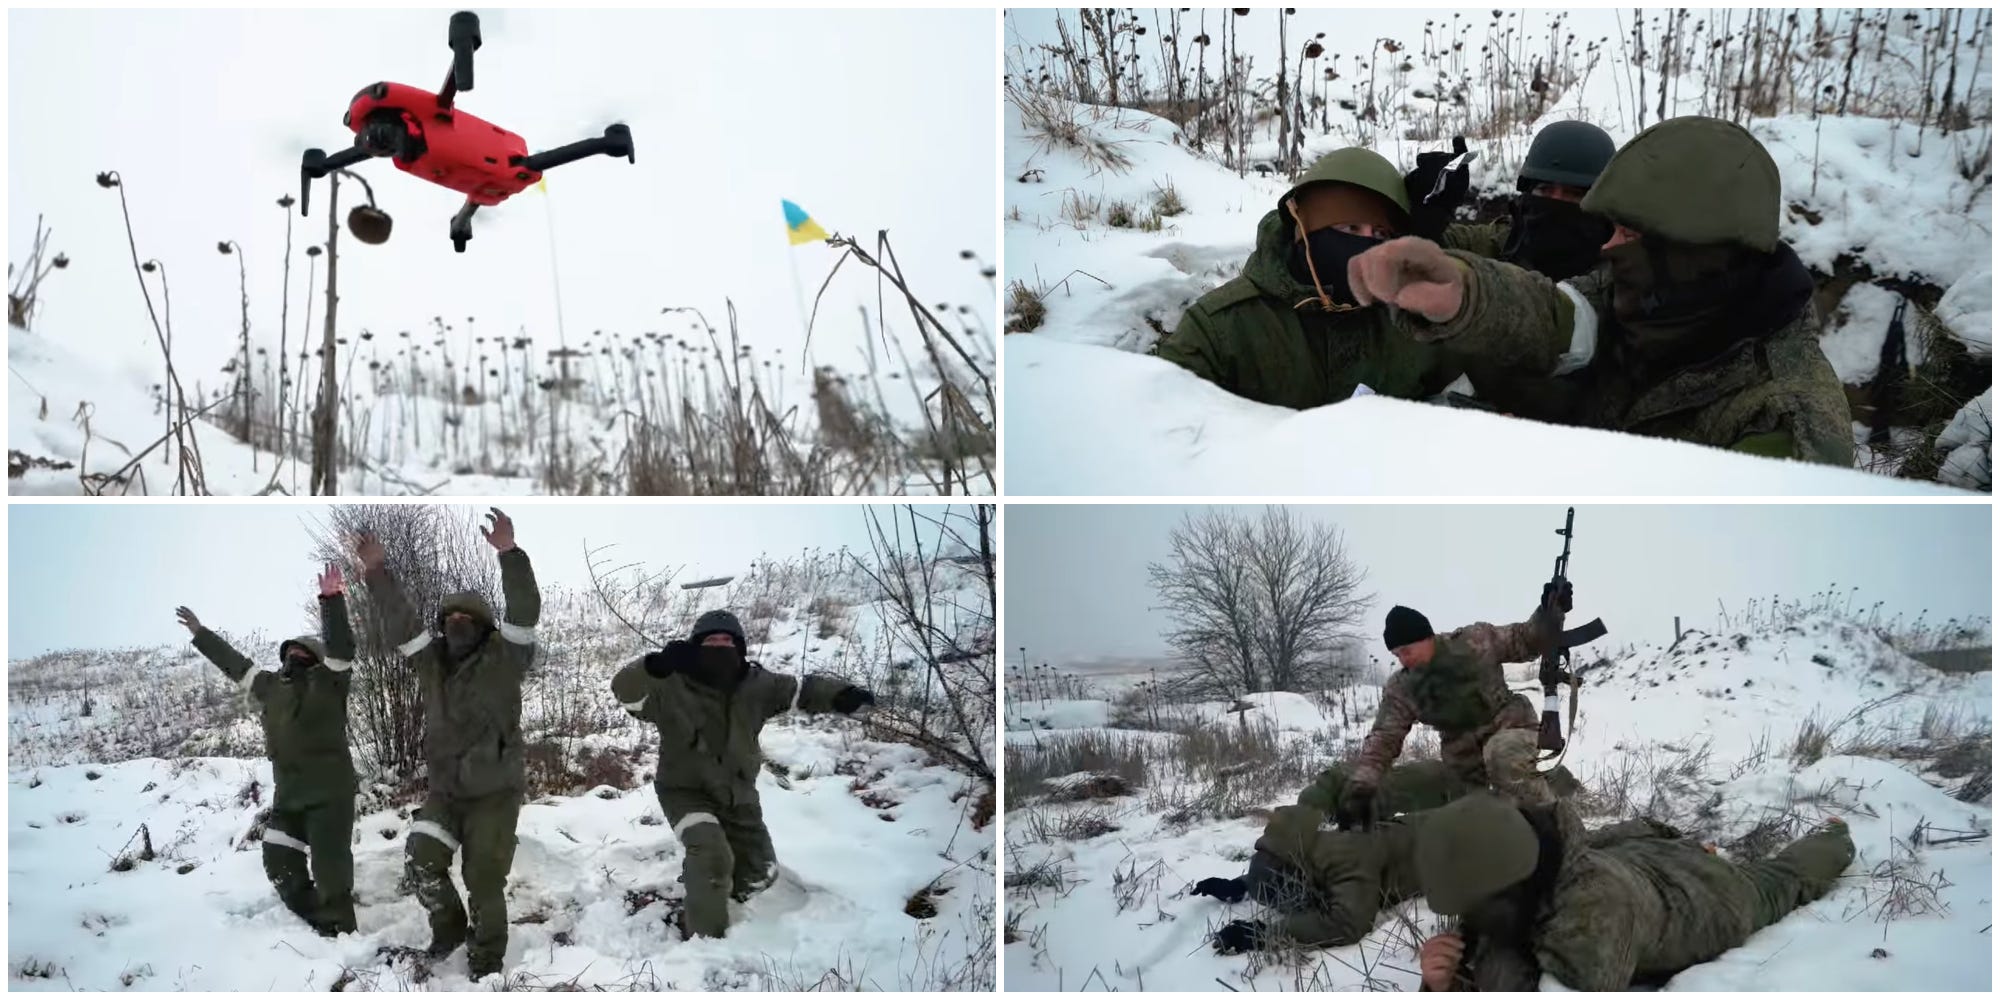 Vier Standbilder aus einem Lehrvideo, das am 12. Dezember 2022 von den Streitkräften der Ukraine herausgegeben wurde und russischen Soldaten zeigt, wie sie sich einer Drohne ergeben.  Drei uniformierte Männer in einer verschneiten Landschaft heben die Hände und folgen einem kleinen roten Quadcopter.